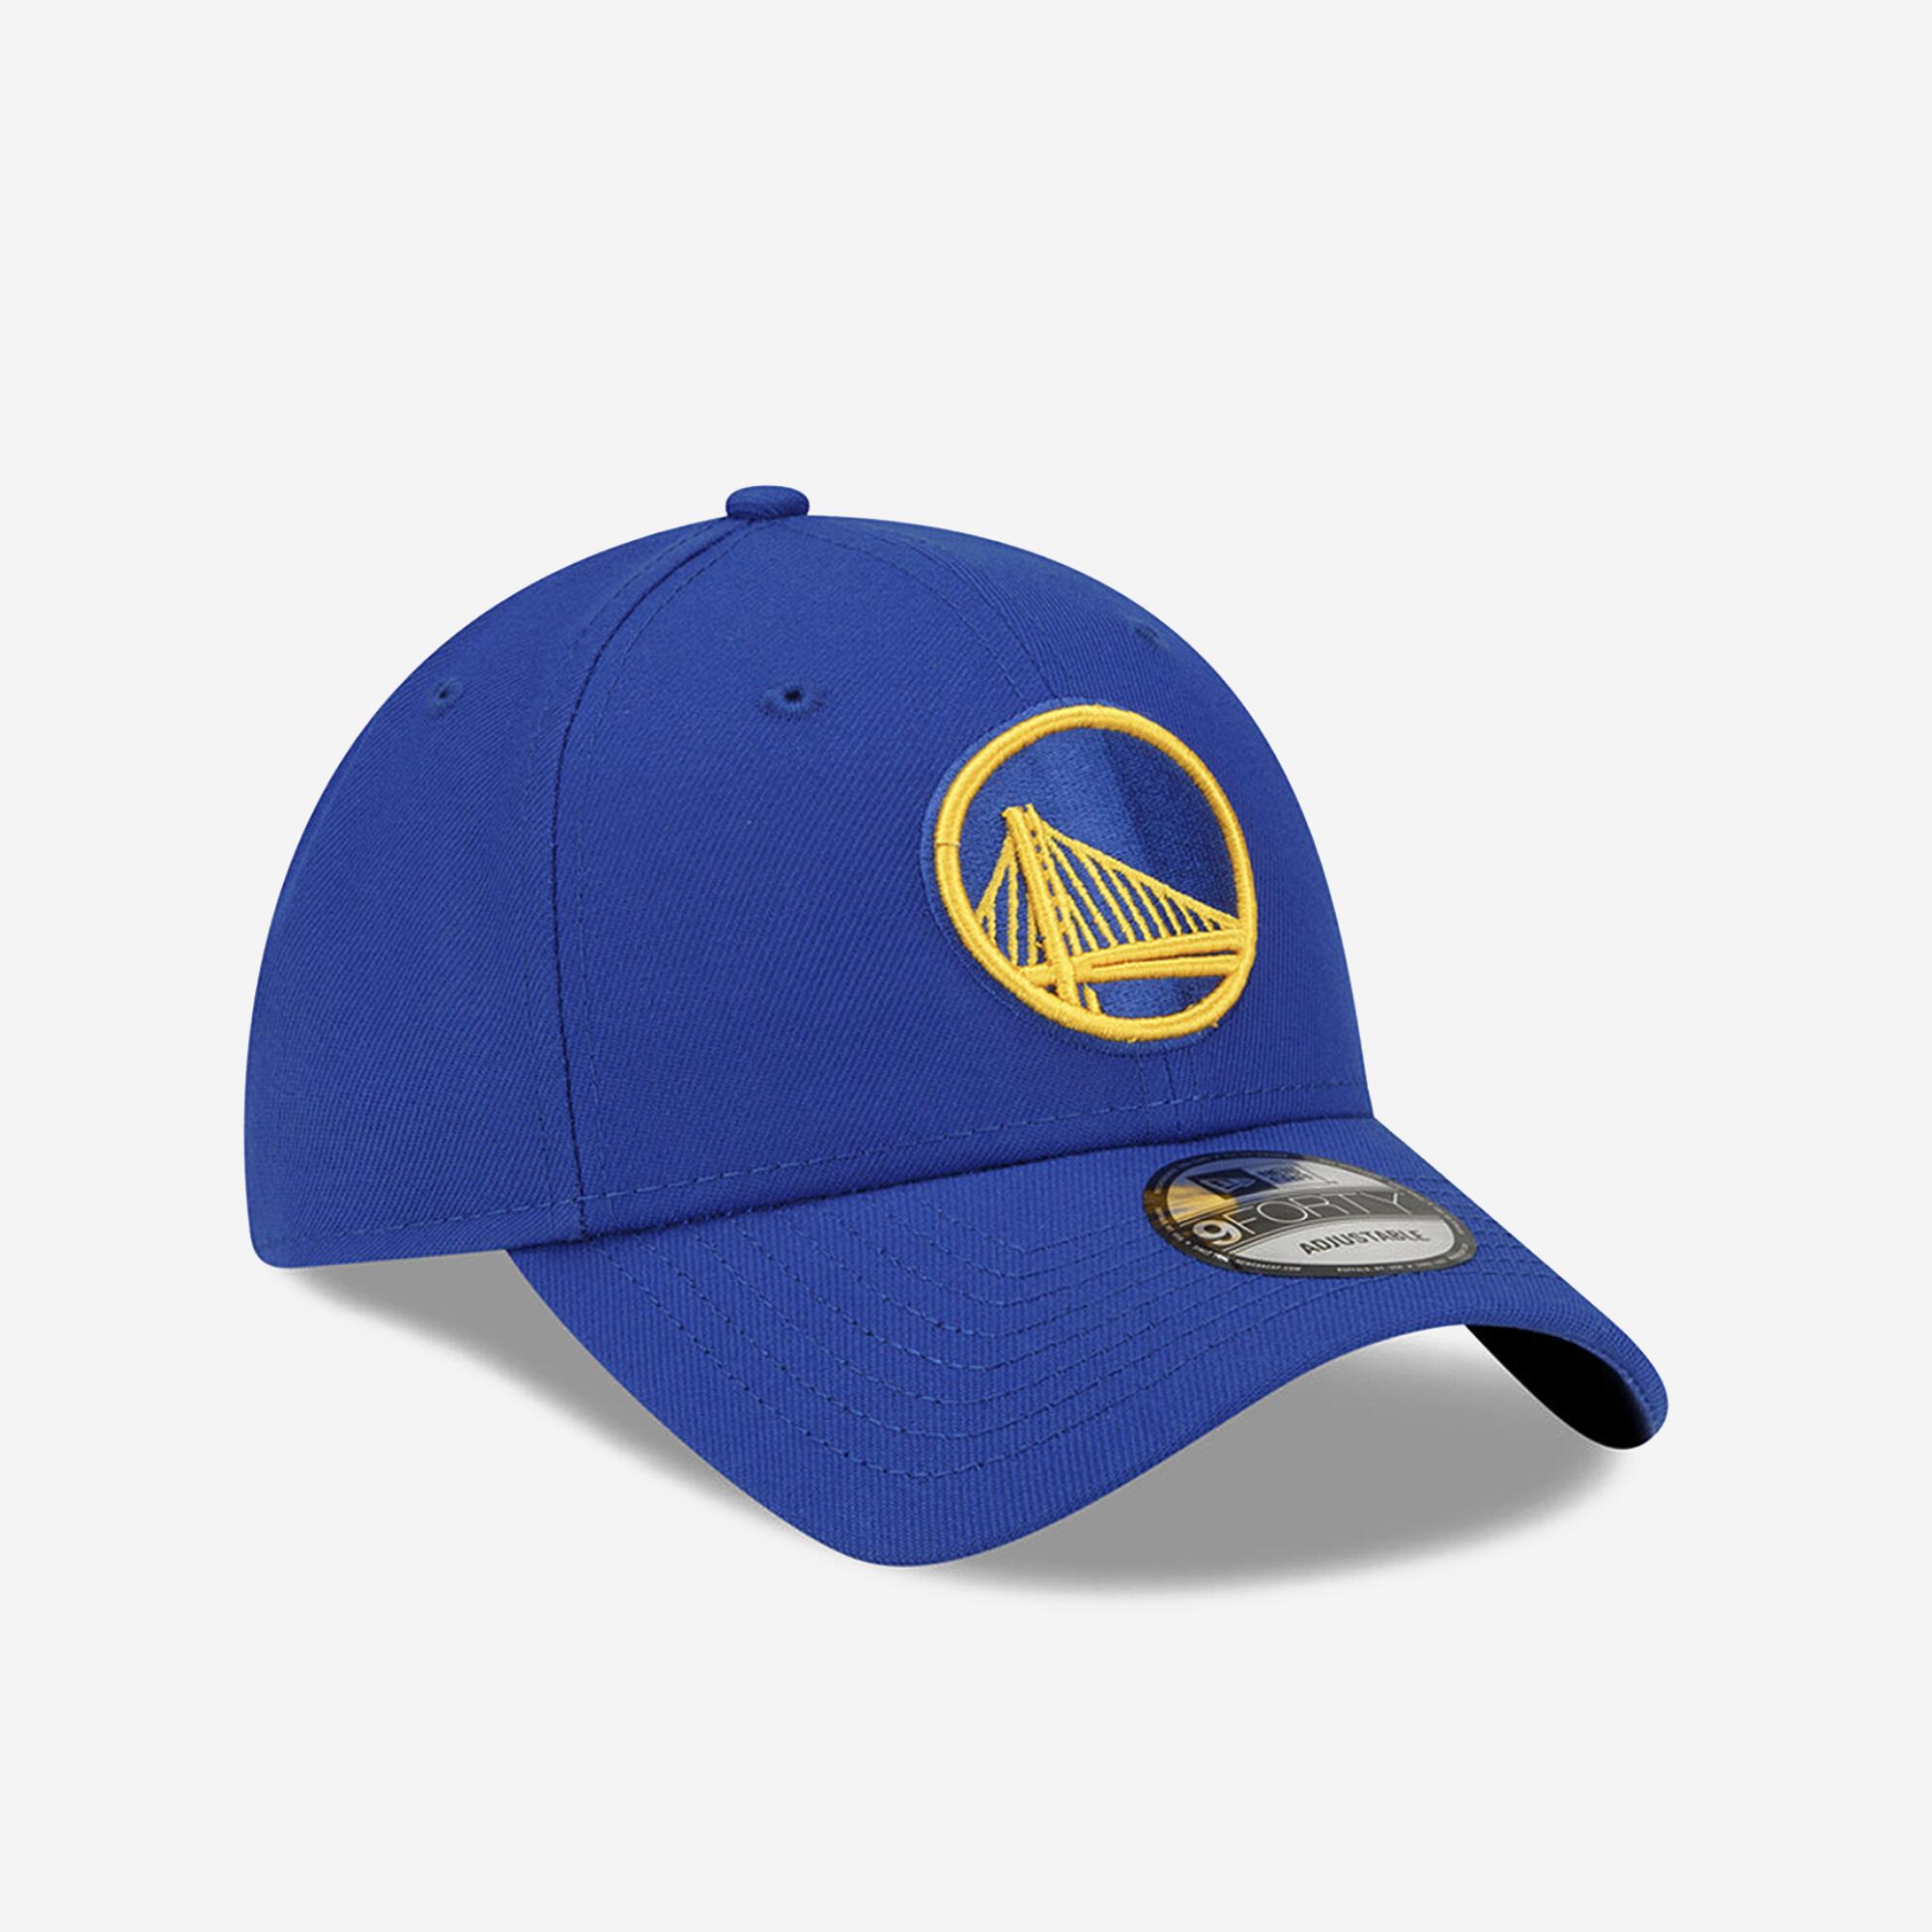 Adult Basketball Cap - NBA Golden State Warriors/Blue 2/5